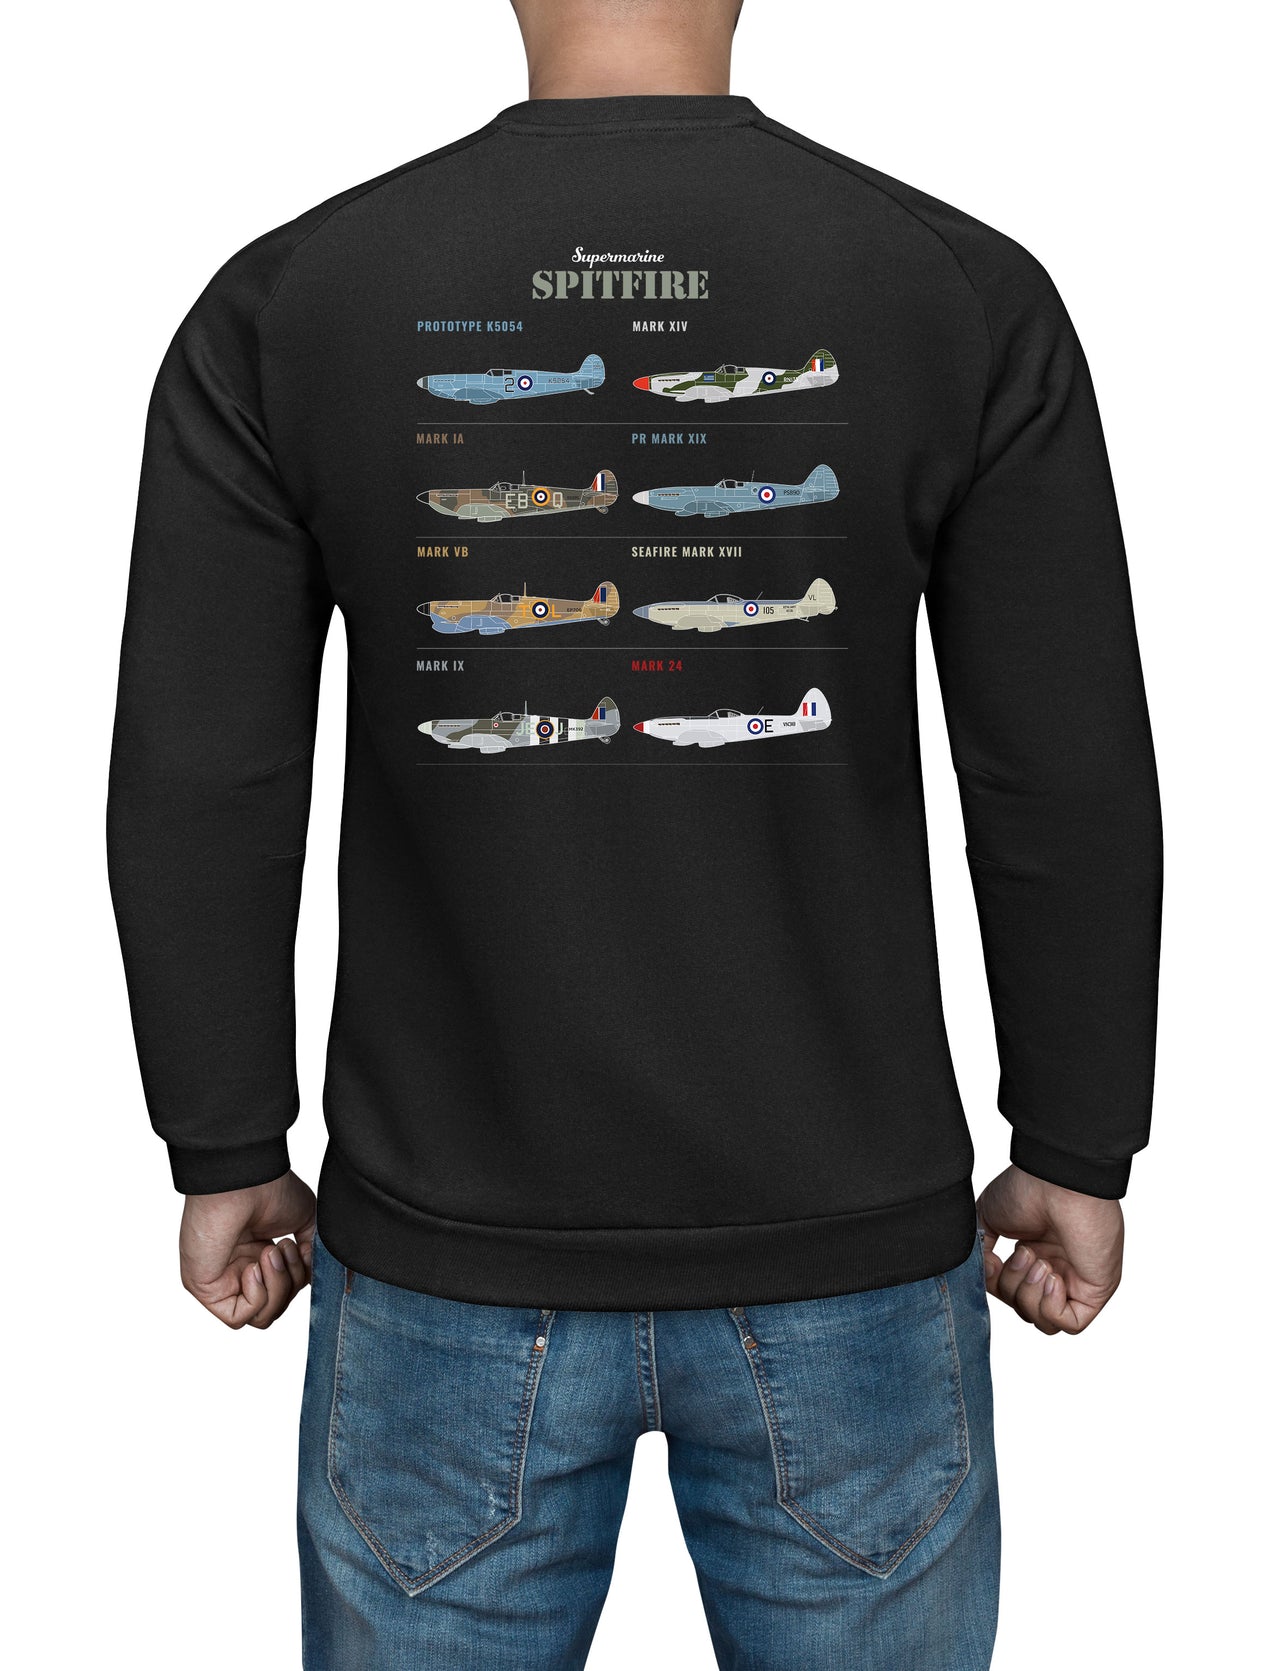 Spitfire MK Ia - Sweat Shirt